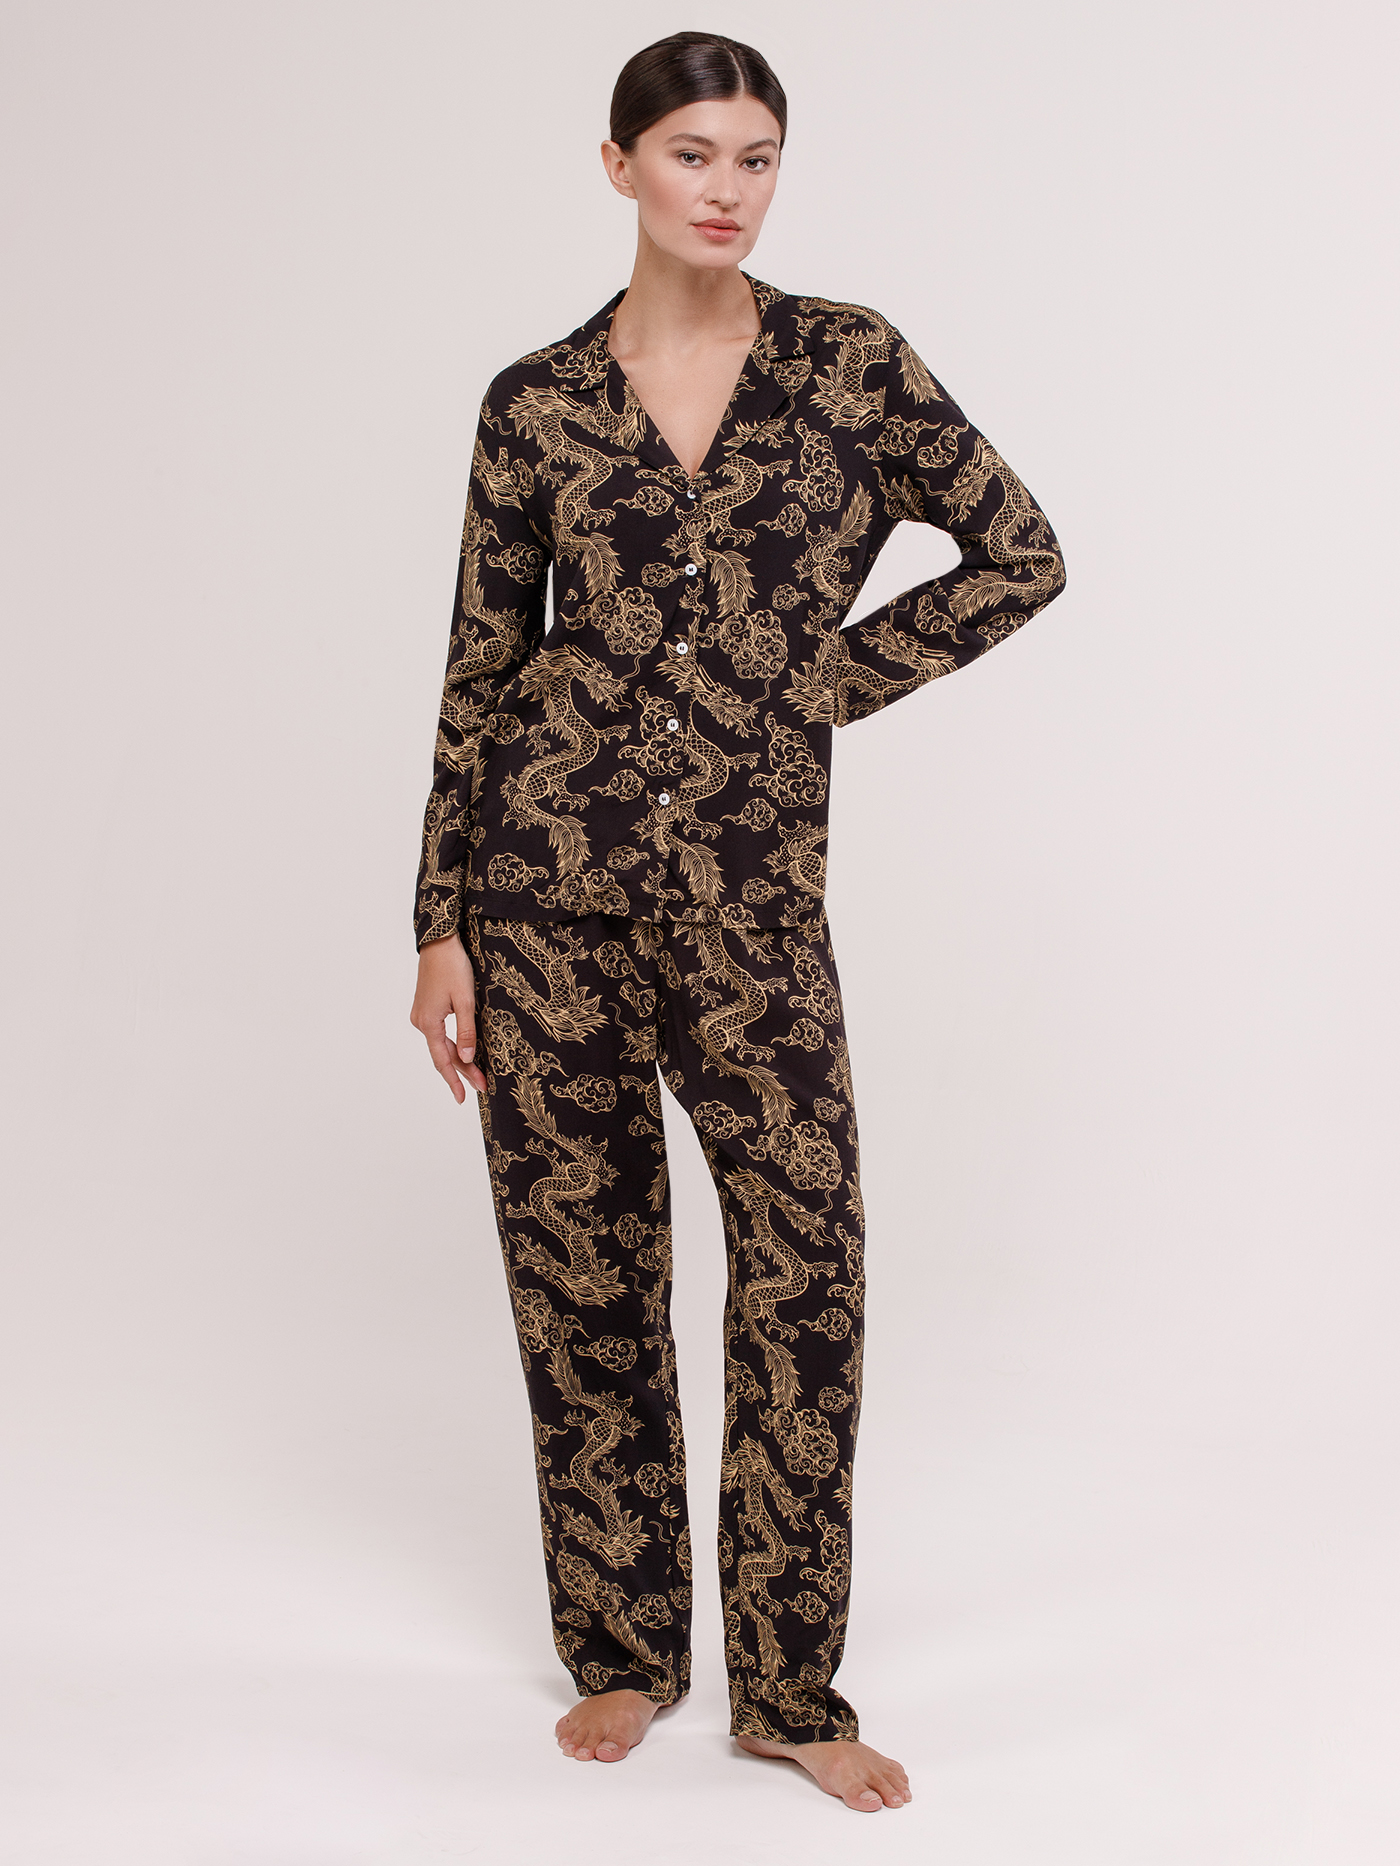 Женские пижамы из хлопка — купить в интернет-магазине Ламода